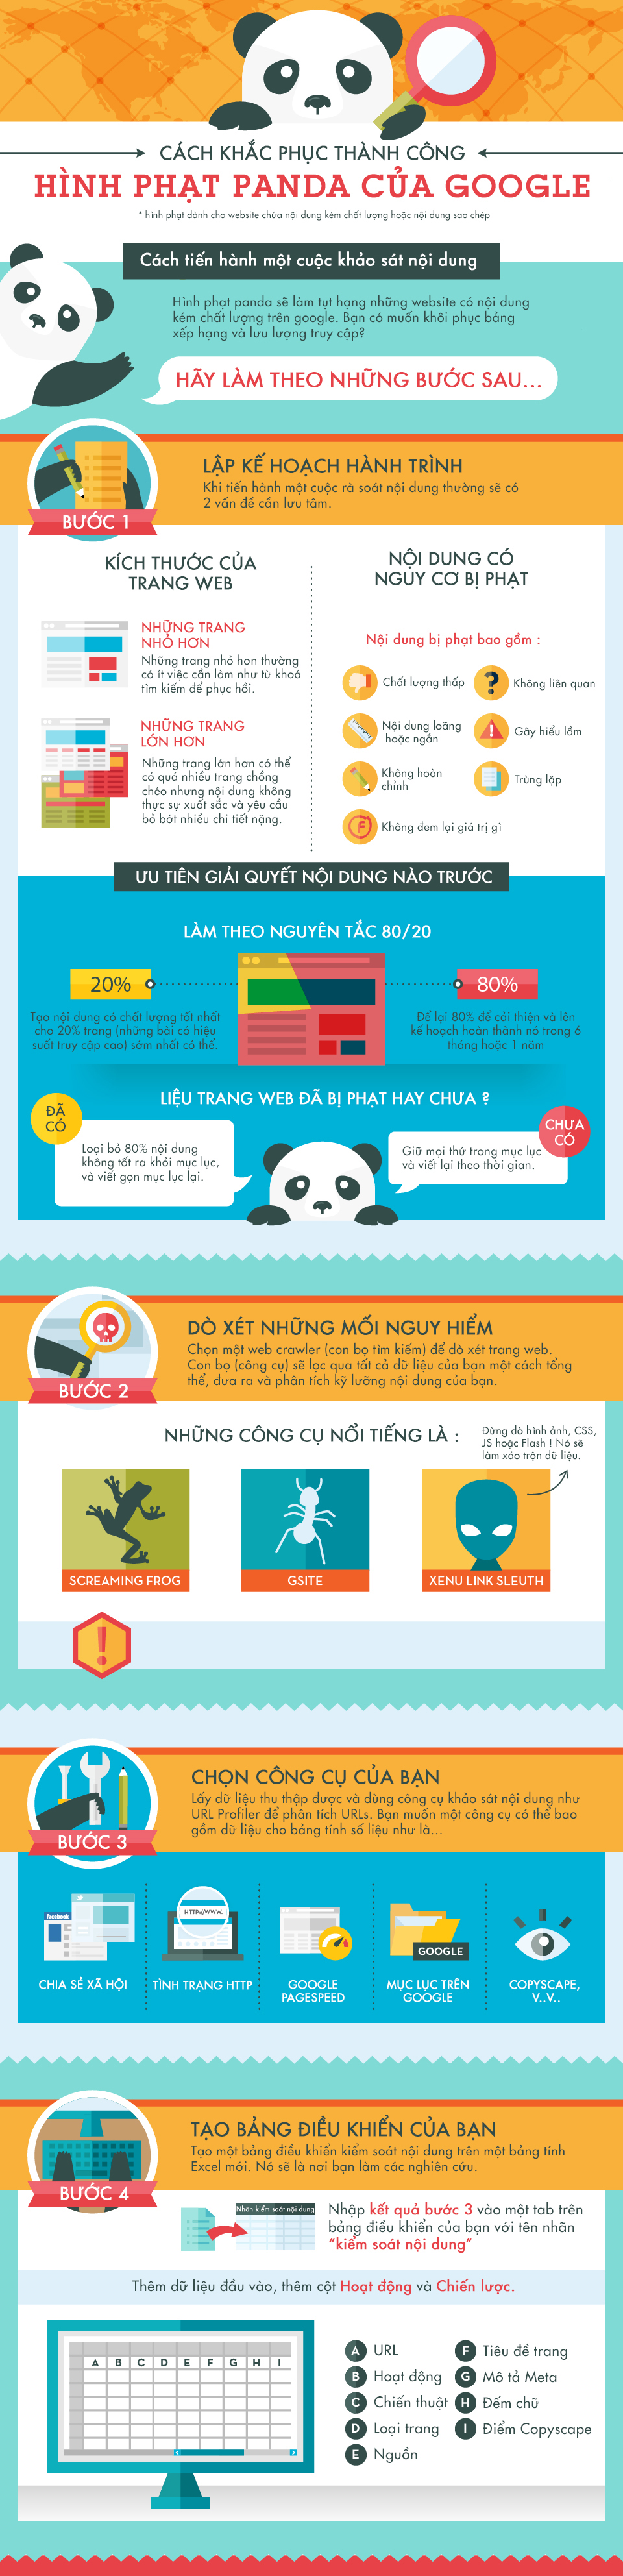 [Infographic] Cách khắc phục thành công hình phạt Panda Google